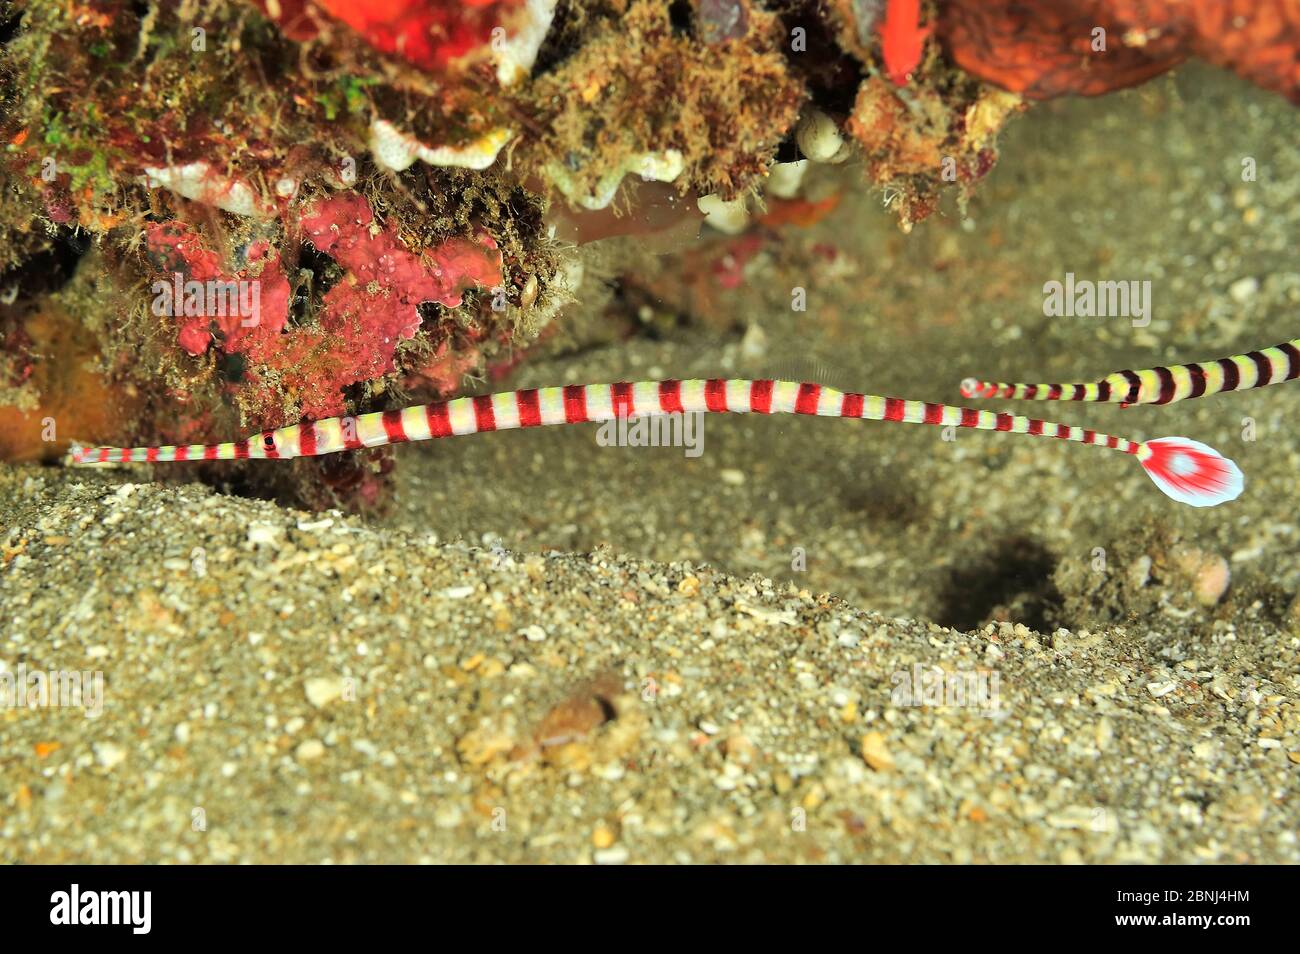 Banded / ringed pipefish (Doryrhamphus dactyliophorus) Sulu Sea, Philippines Stock Photo